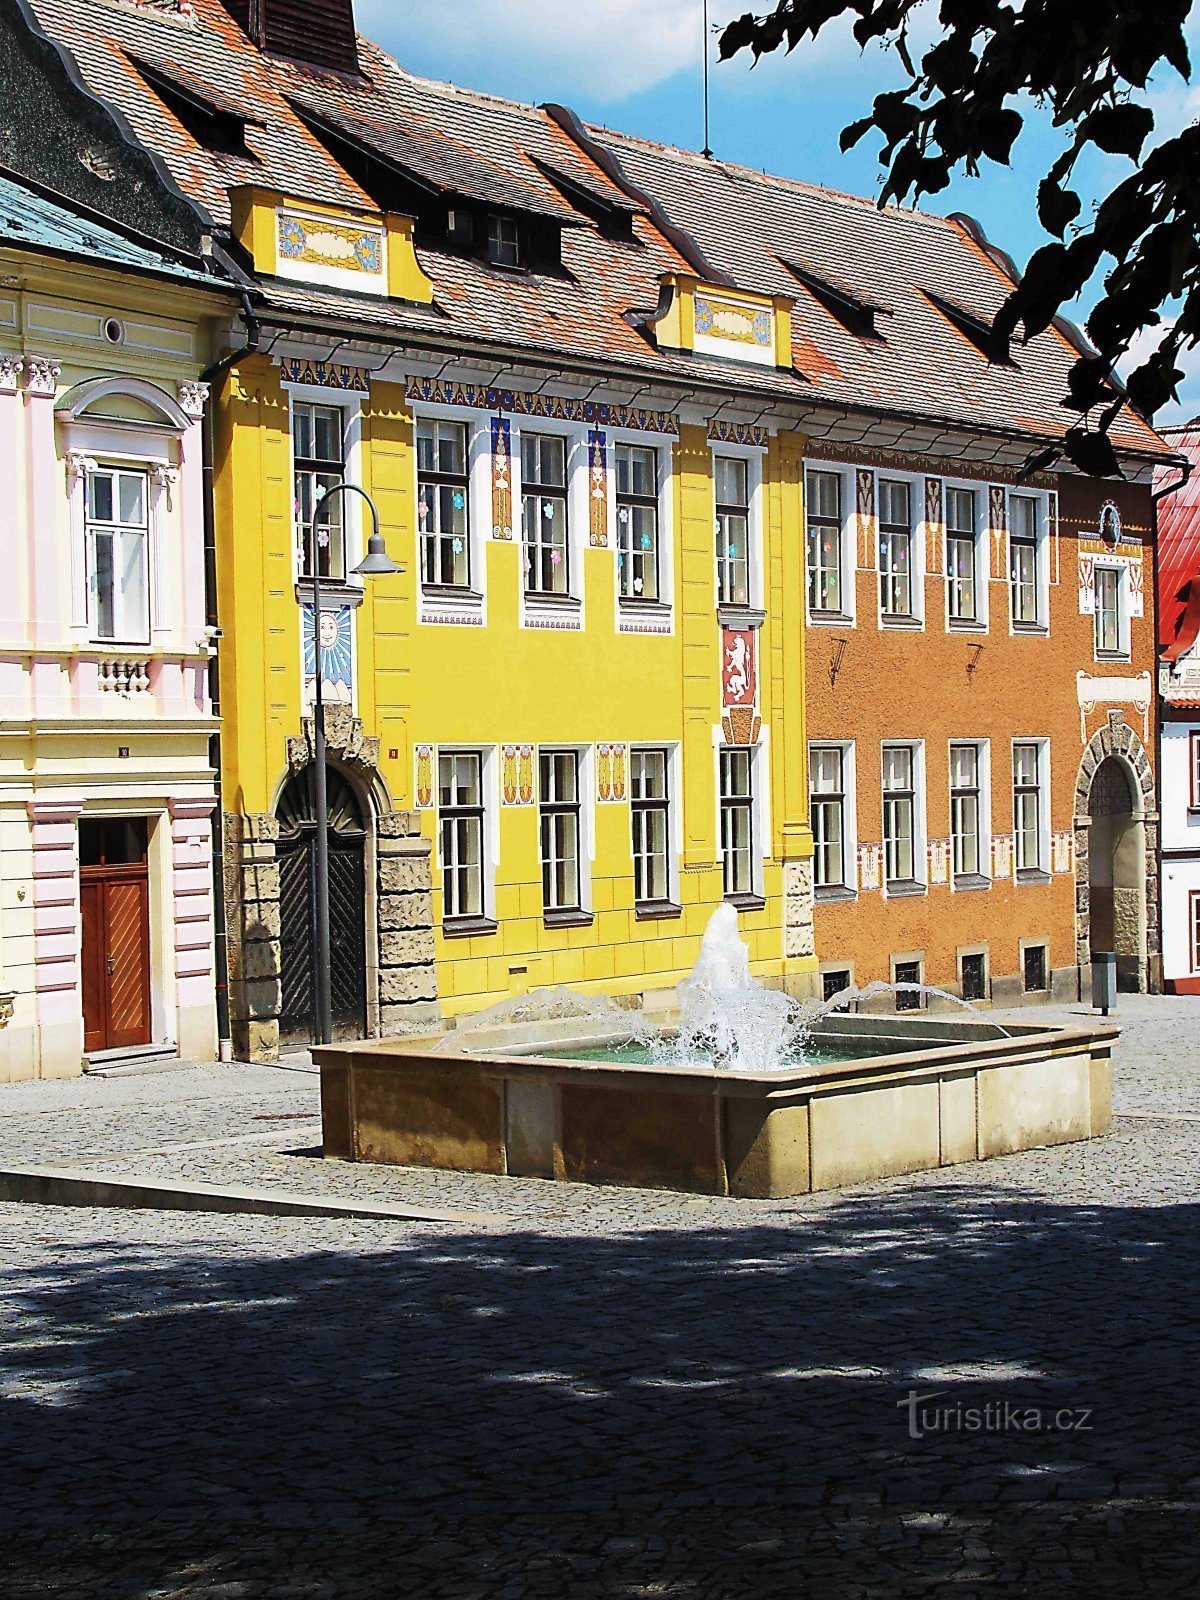 Trường học thành phố - tòa nhà lịch sử ở Opočno